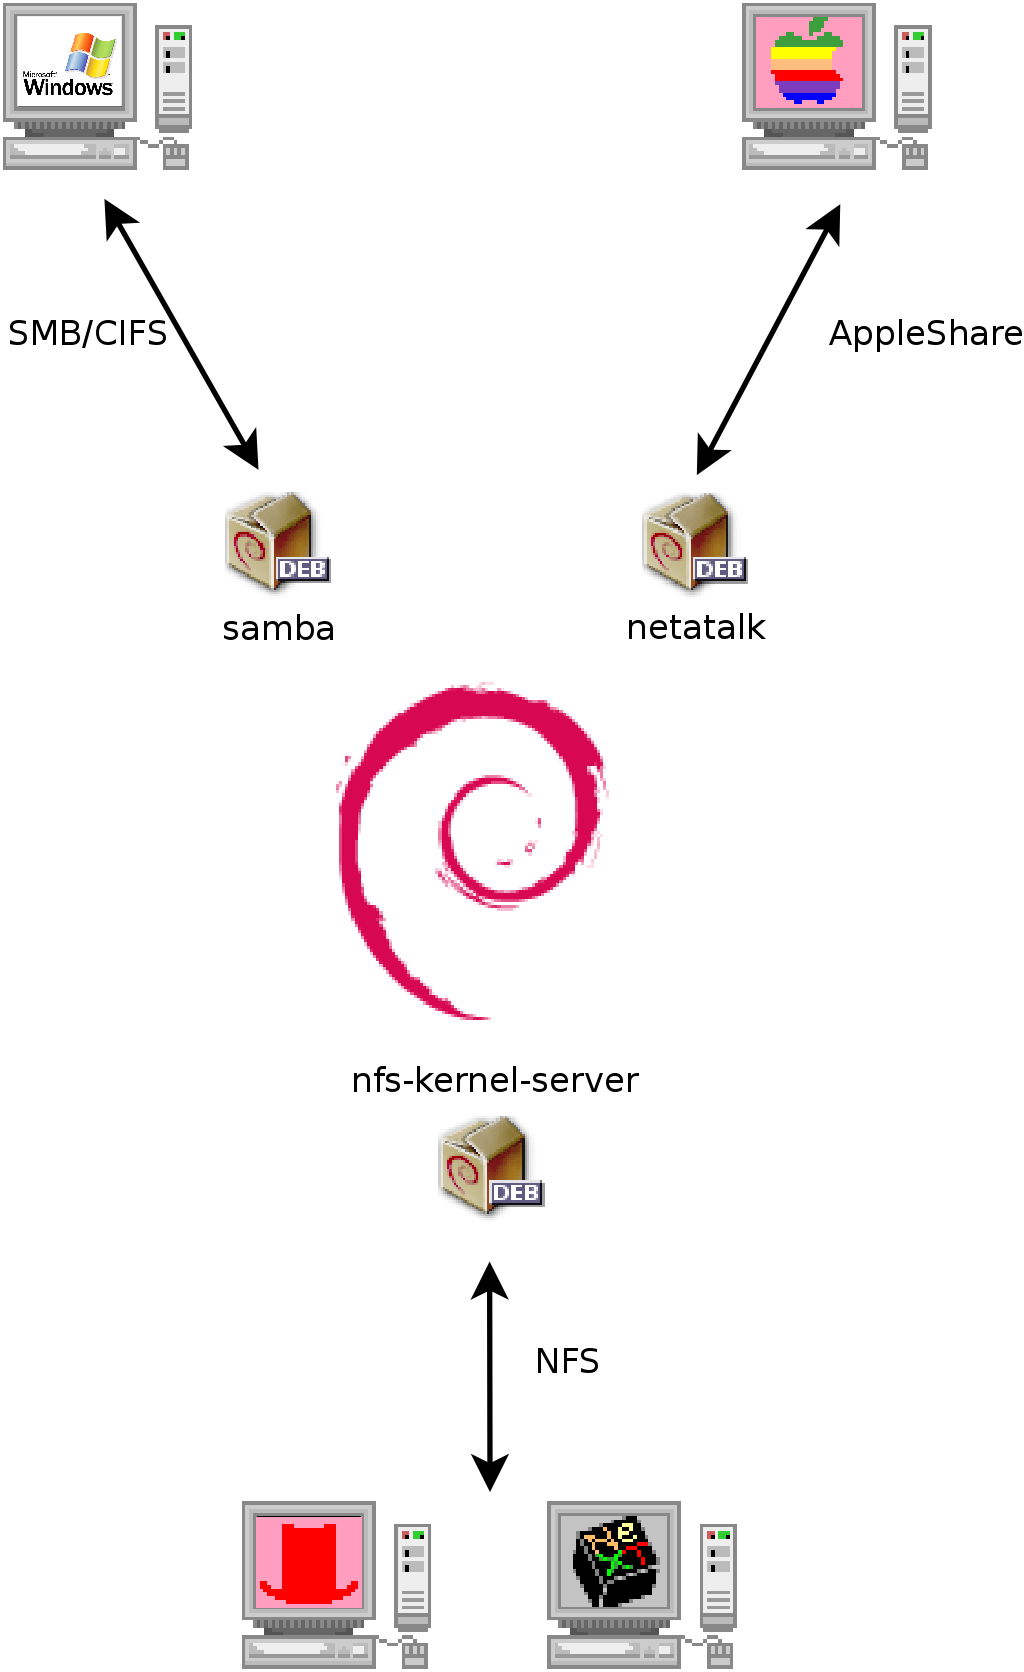 Coexistência do Debian com OS X, Windows e sistemas Unix